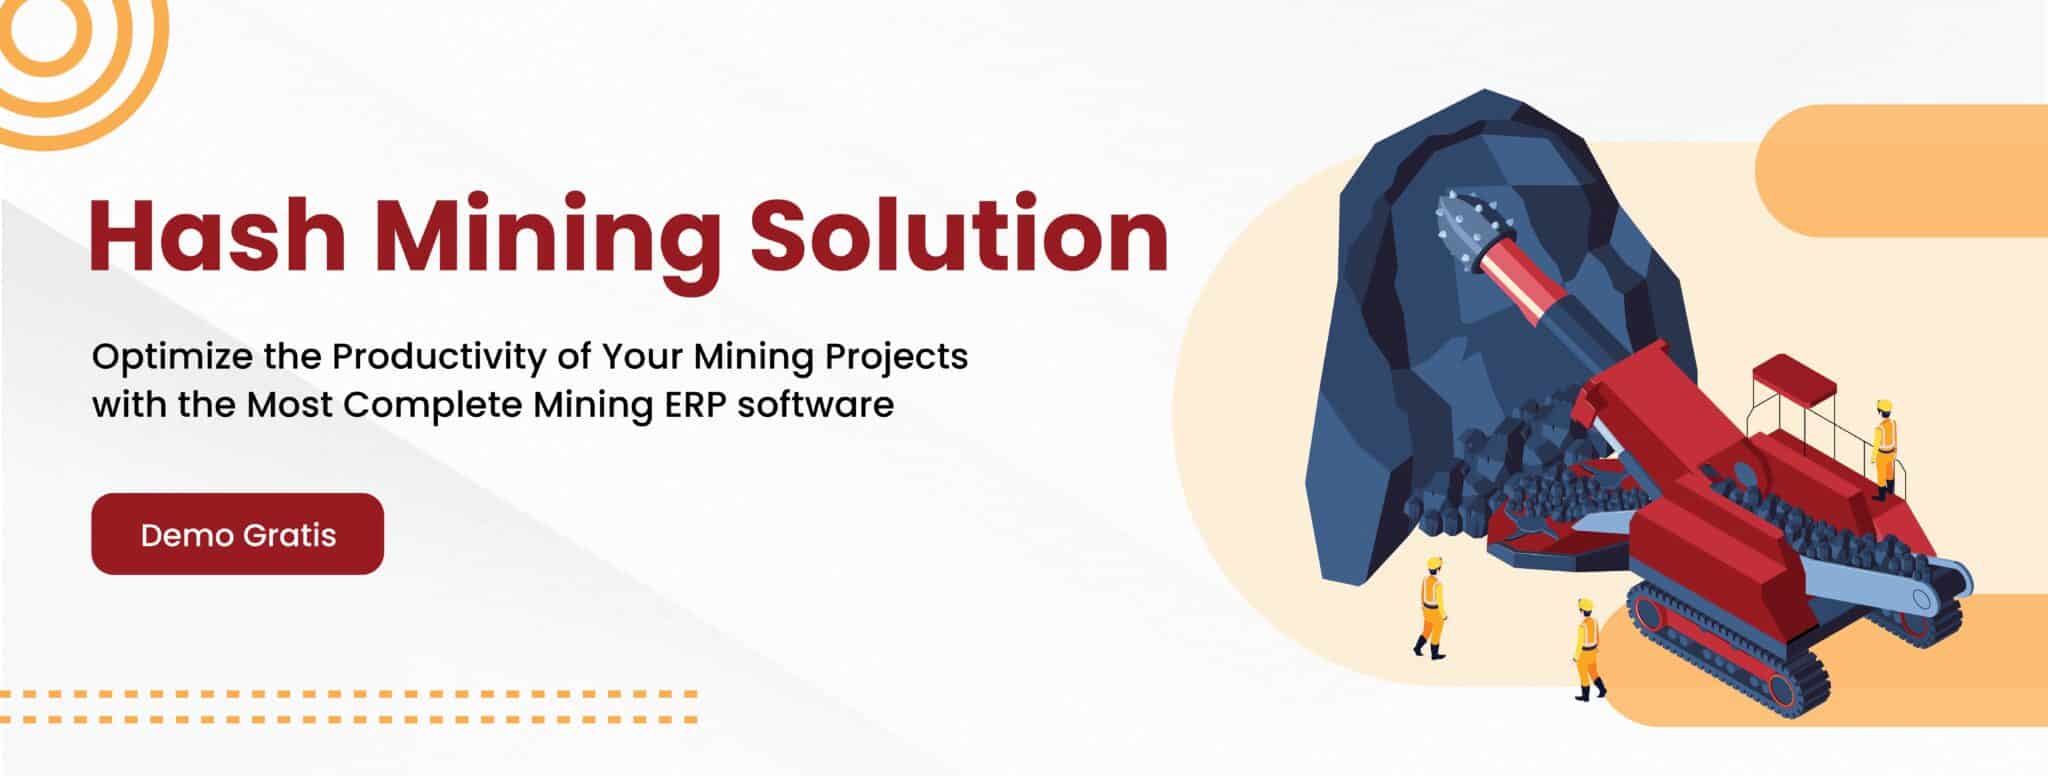 mining solution